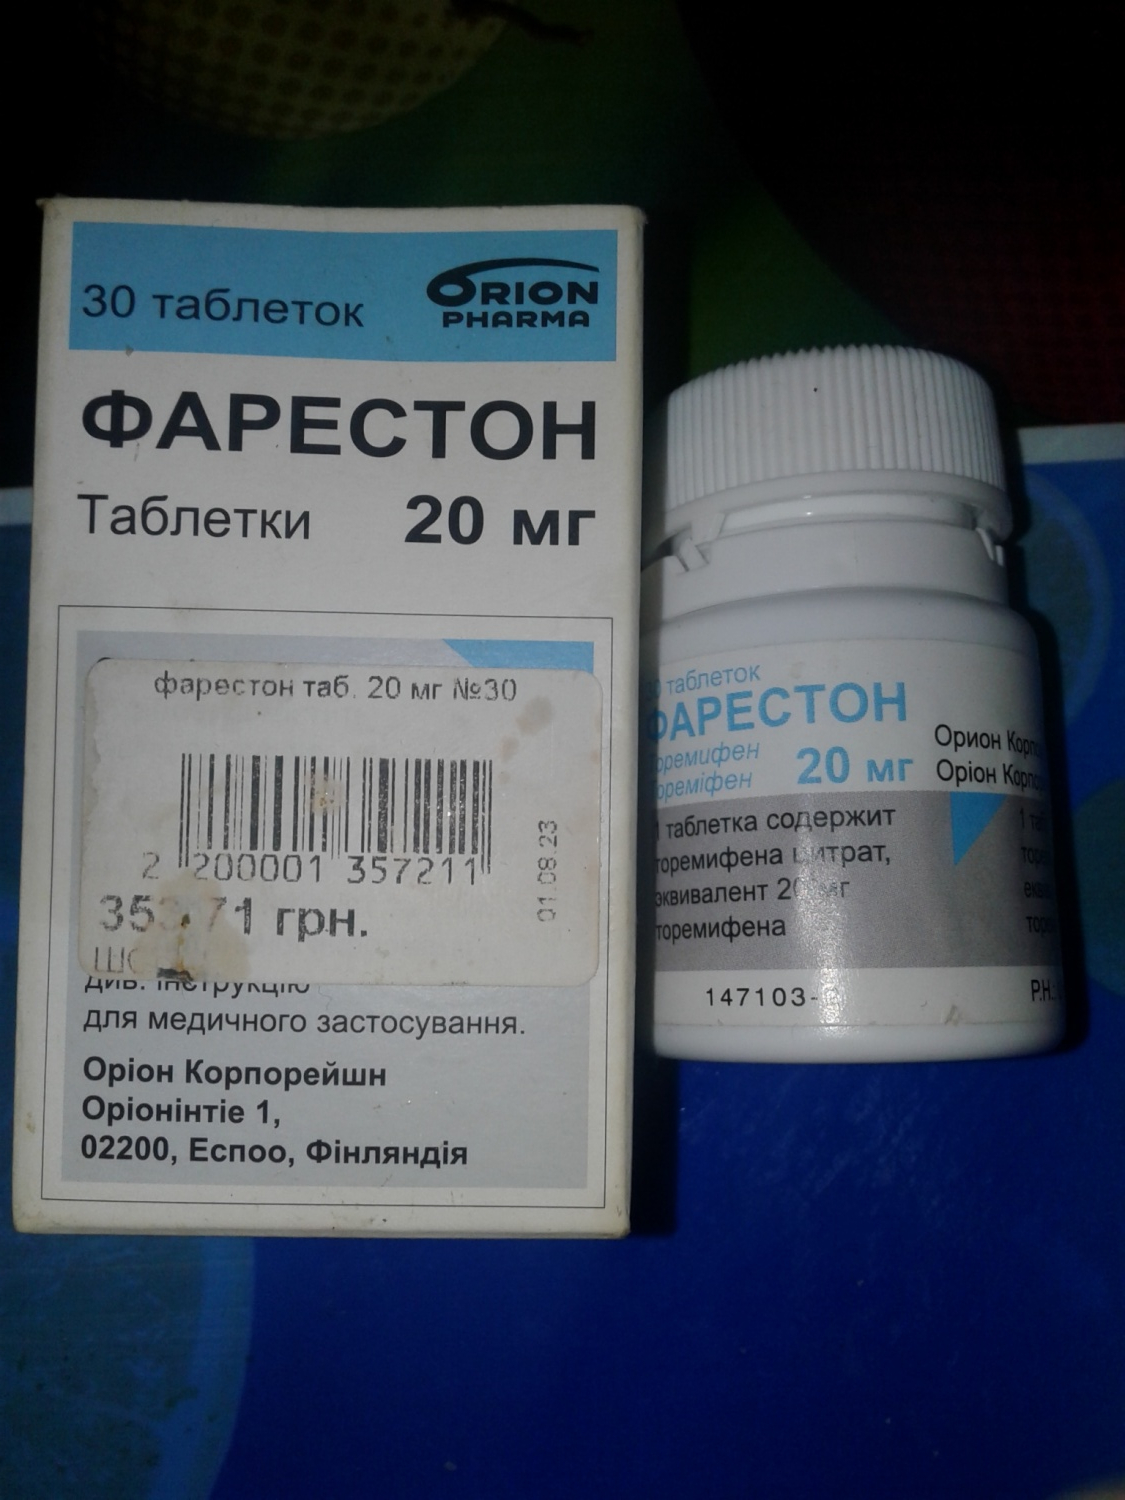 Антиэстрогенный препарат с противоопухолевым действием Orion Pharma .